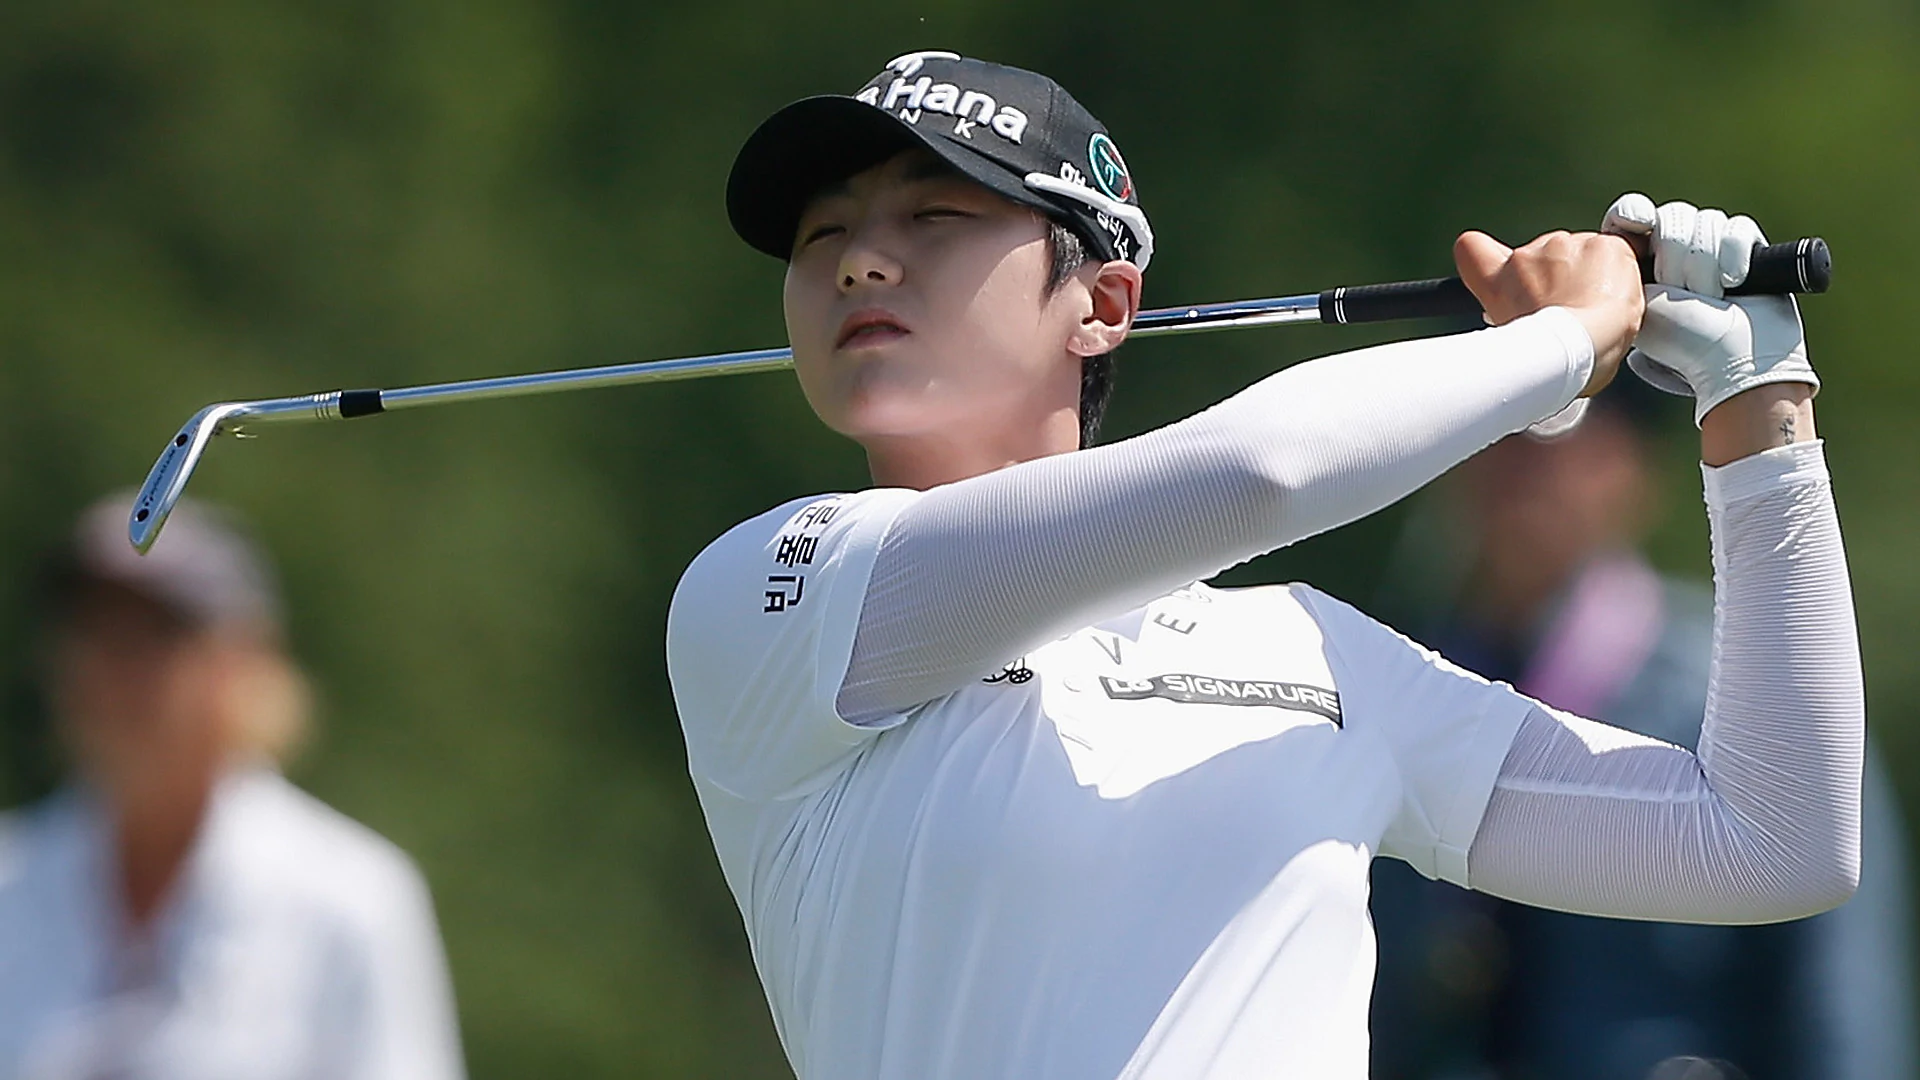 Park tops amateur Choi to win U.S. Women's Open